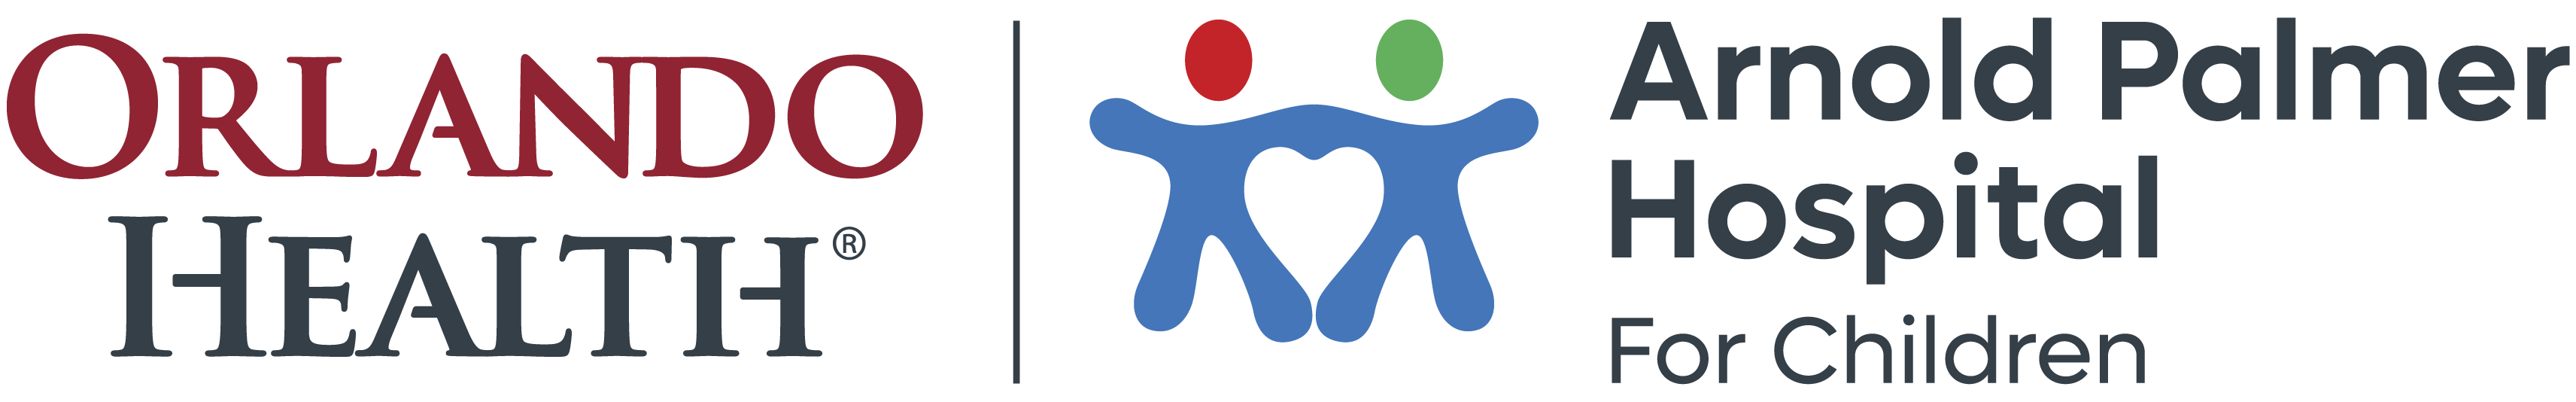 Arnold Palmer Hospital for Children Logo